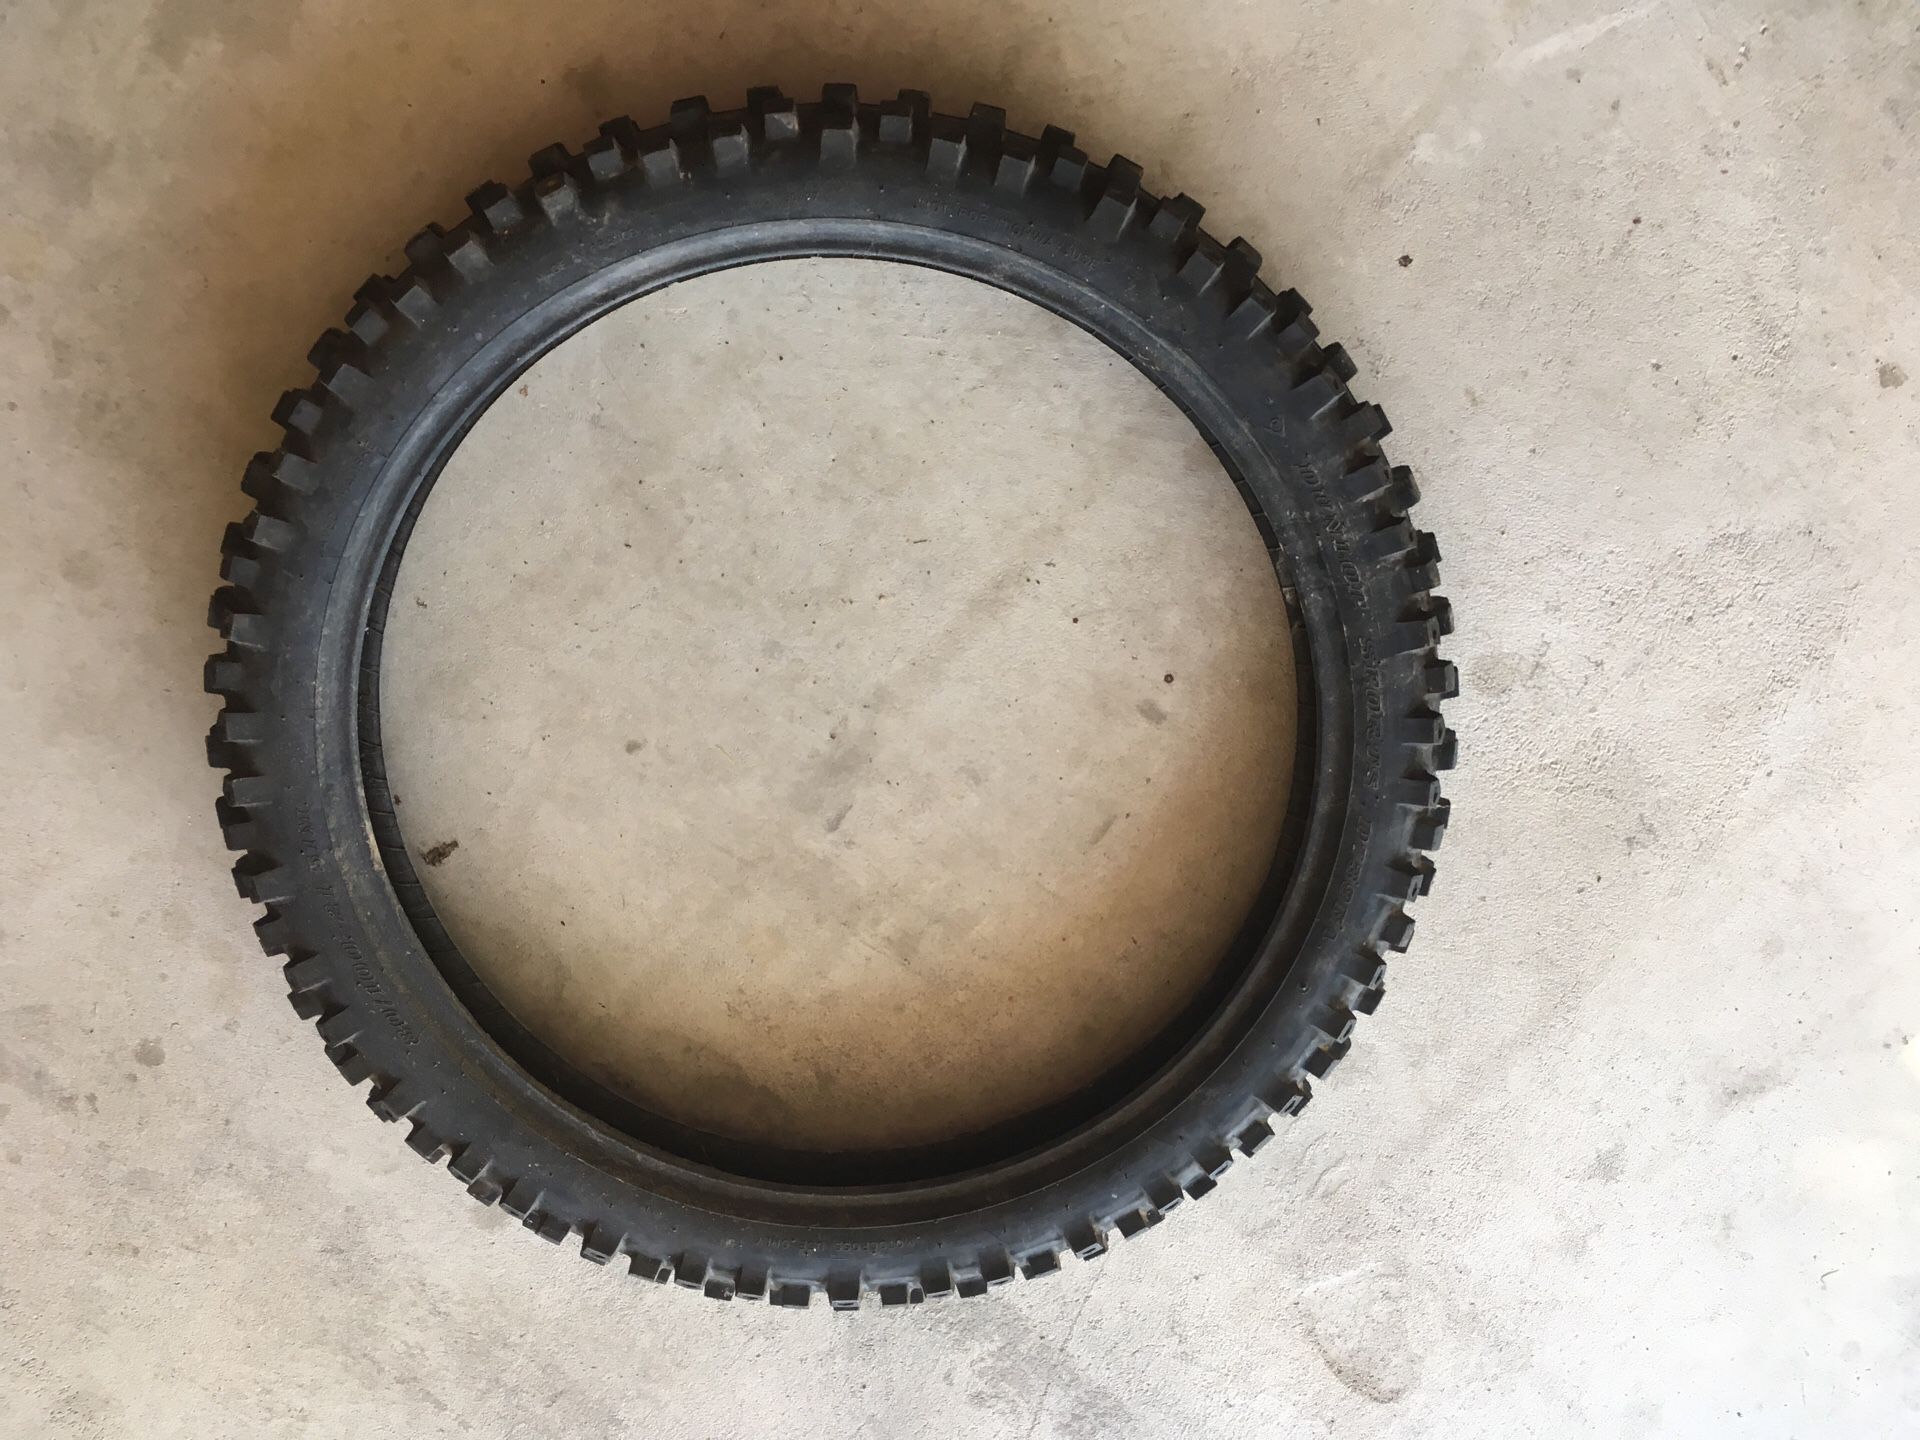 Dunlop 80-100/21” MX Front Tire